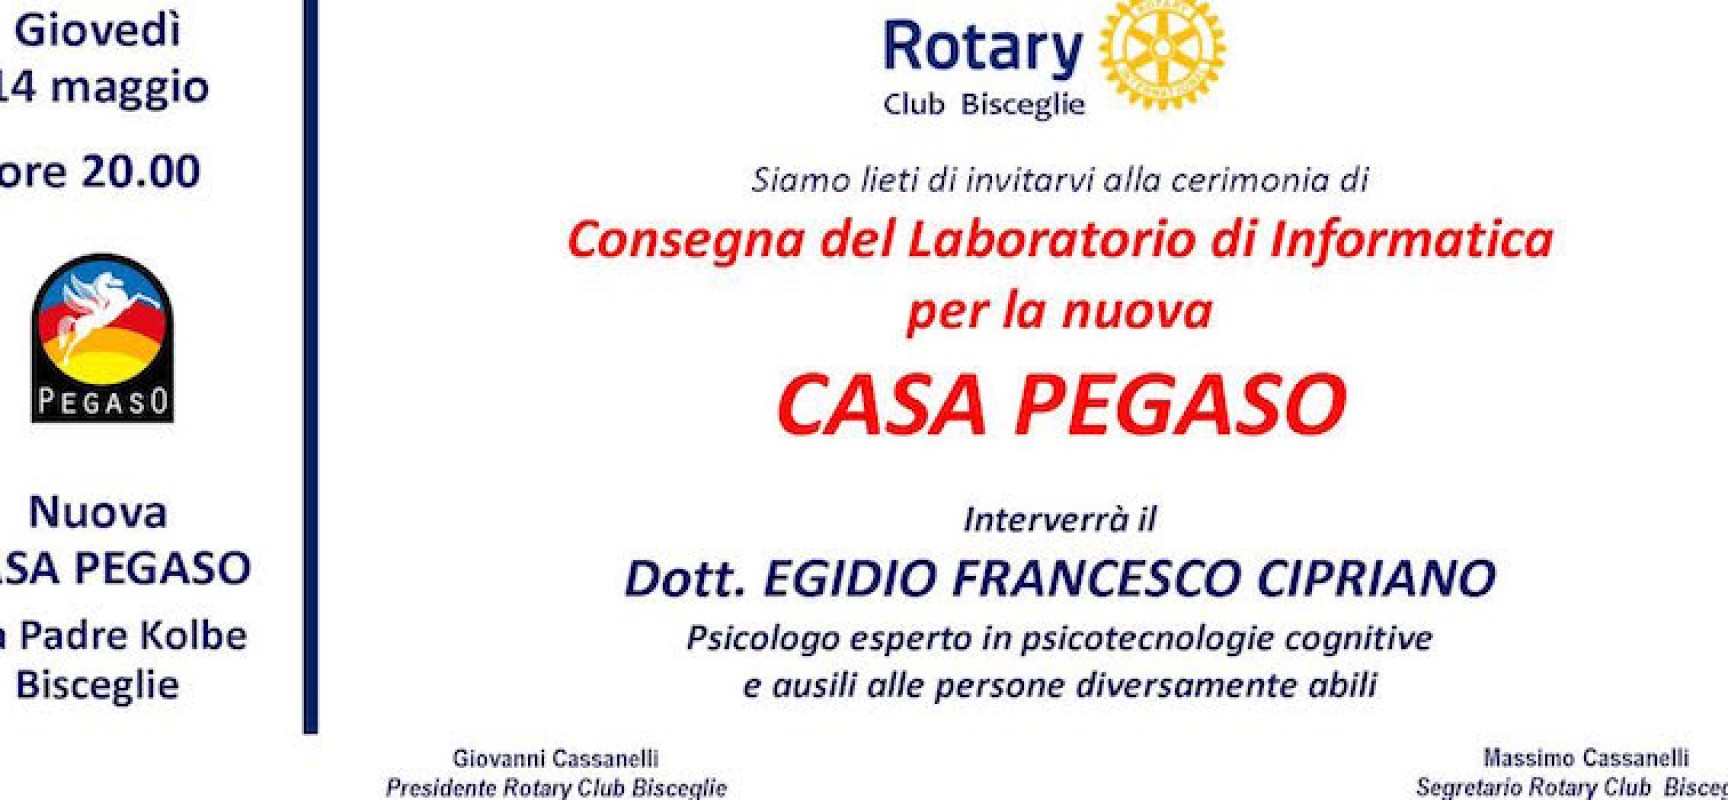 Rotary Club, domani la cerimonia di consegna del laboratorio informatico alla Casa Pegaso